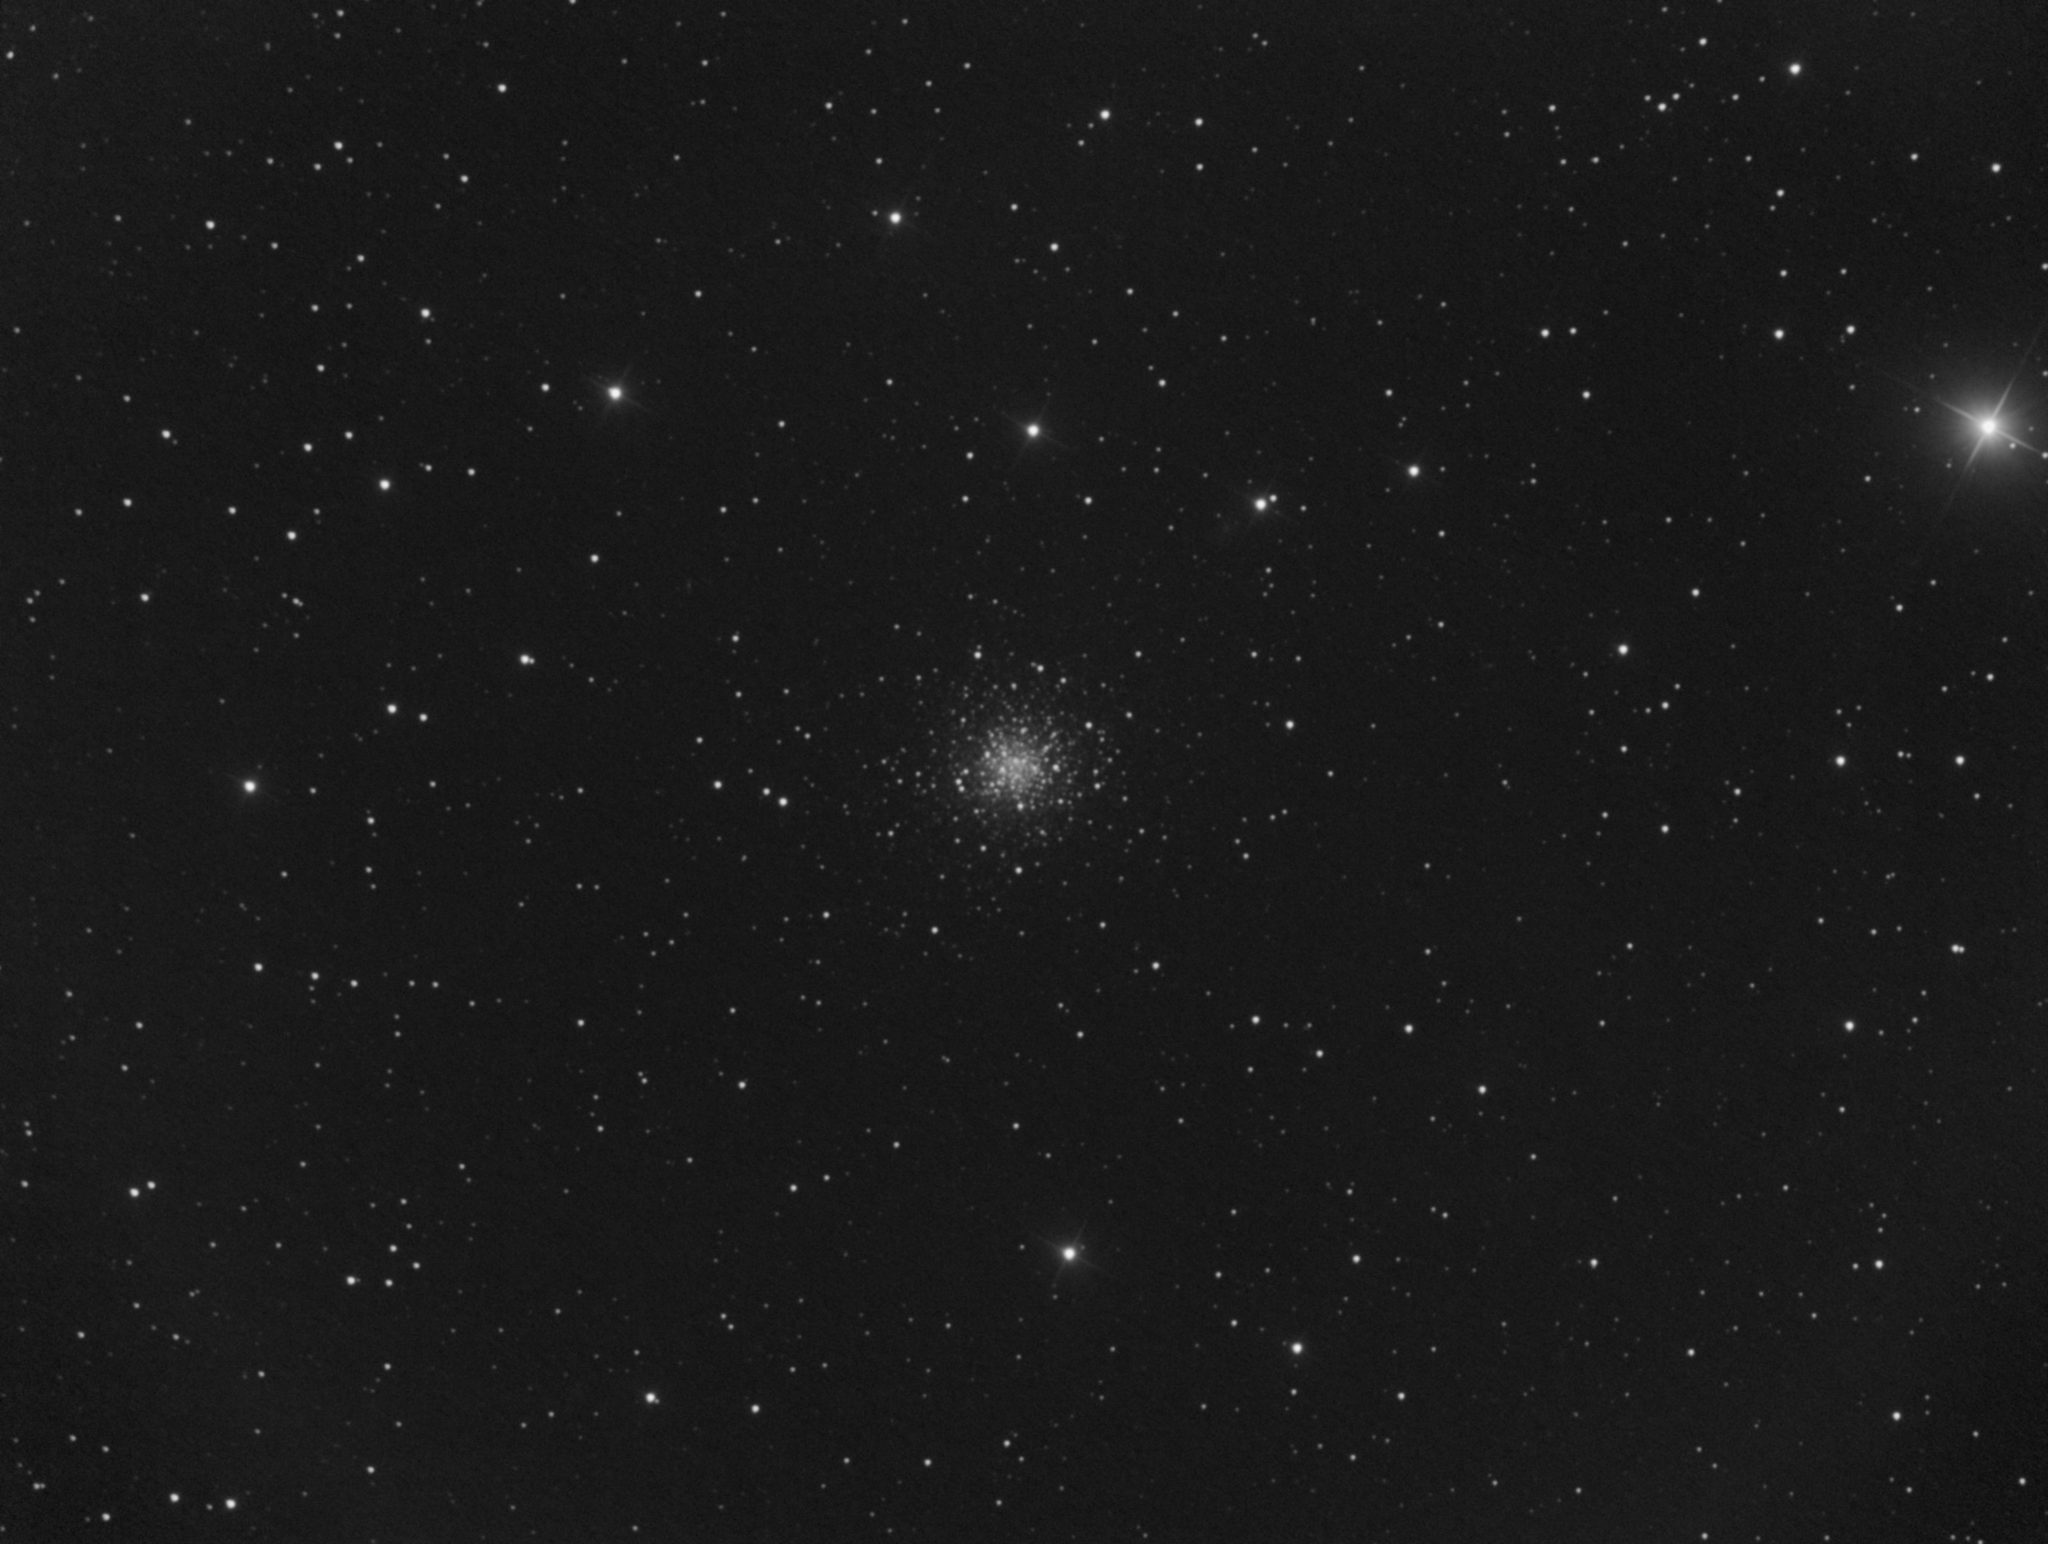 Messier 68 dans l'Hydre Femelle